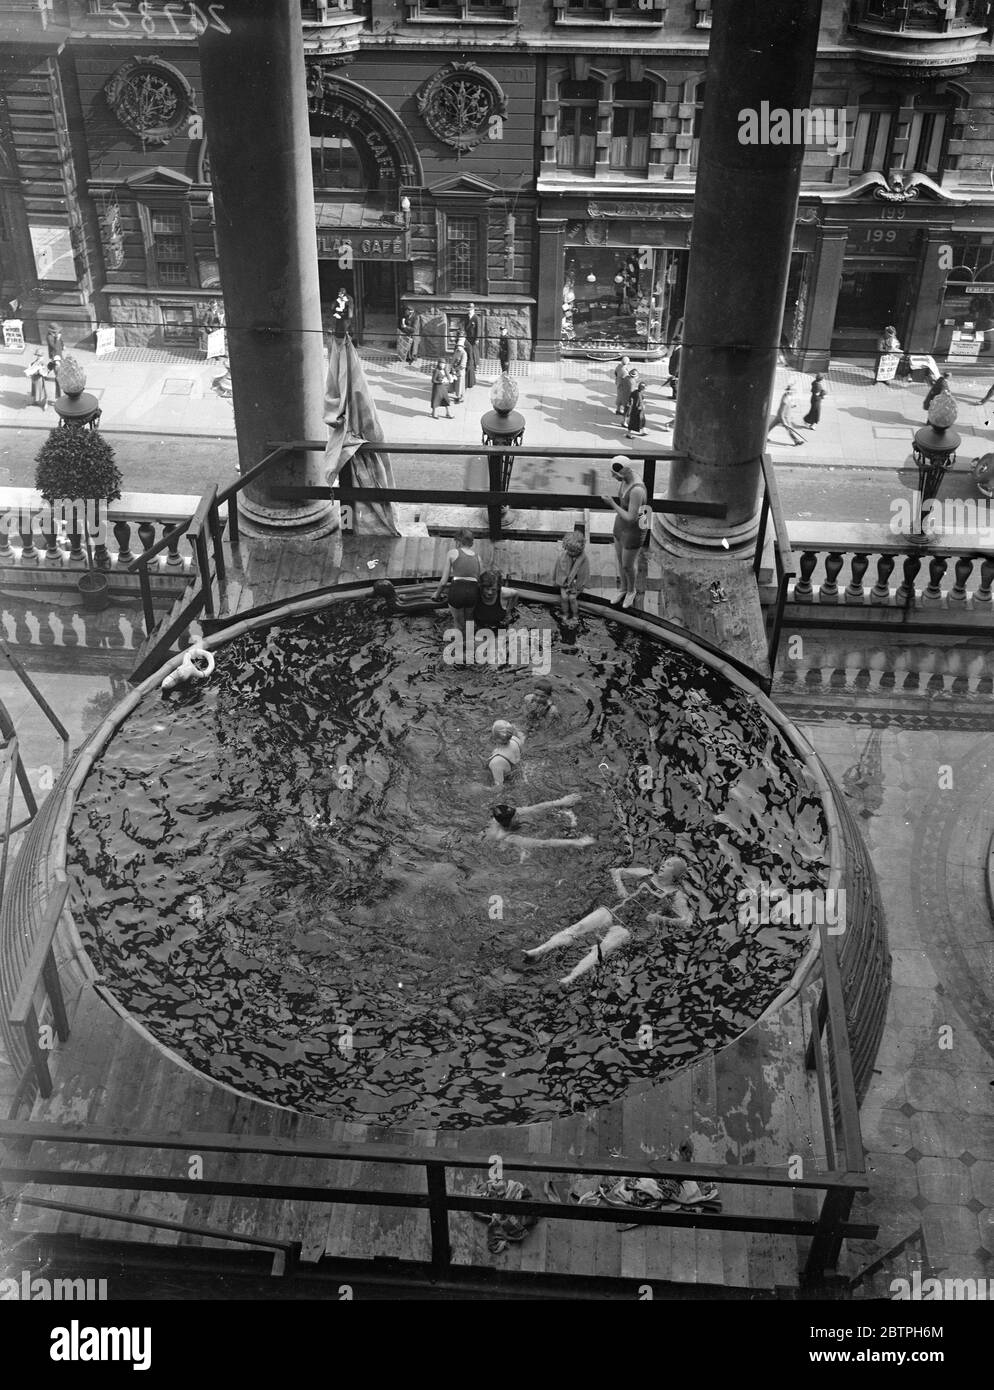 Baden über Piccadilly Verkehr. Auf dem terrassenbeeten Balkon des Piccadilly Hotels wurde ein Pool aufgestellt und die Badegäste tauchen direkt über dem Straßenverkehr ins Wasser. Badegäste im Pool über der Straße. August 1932 Stockfoto